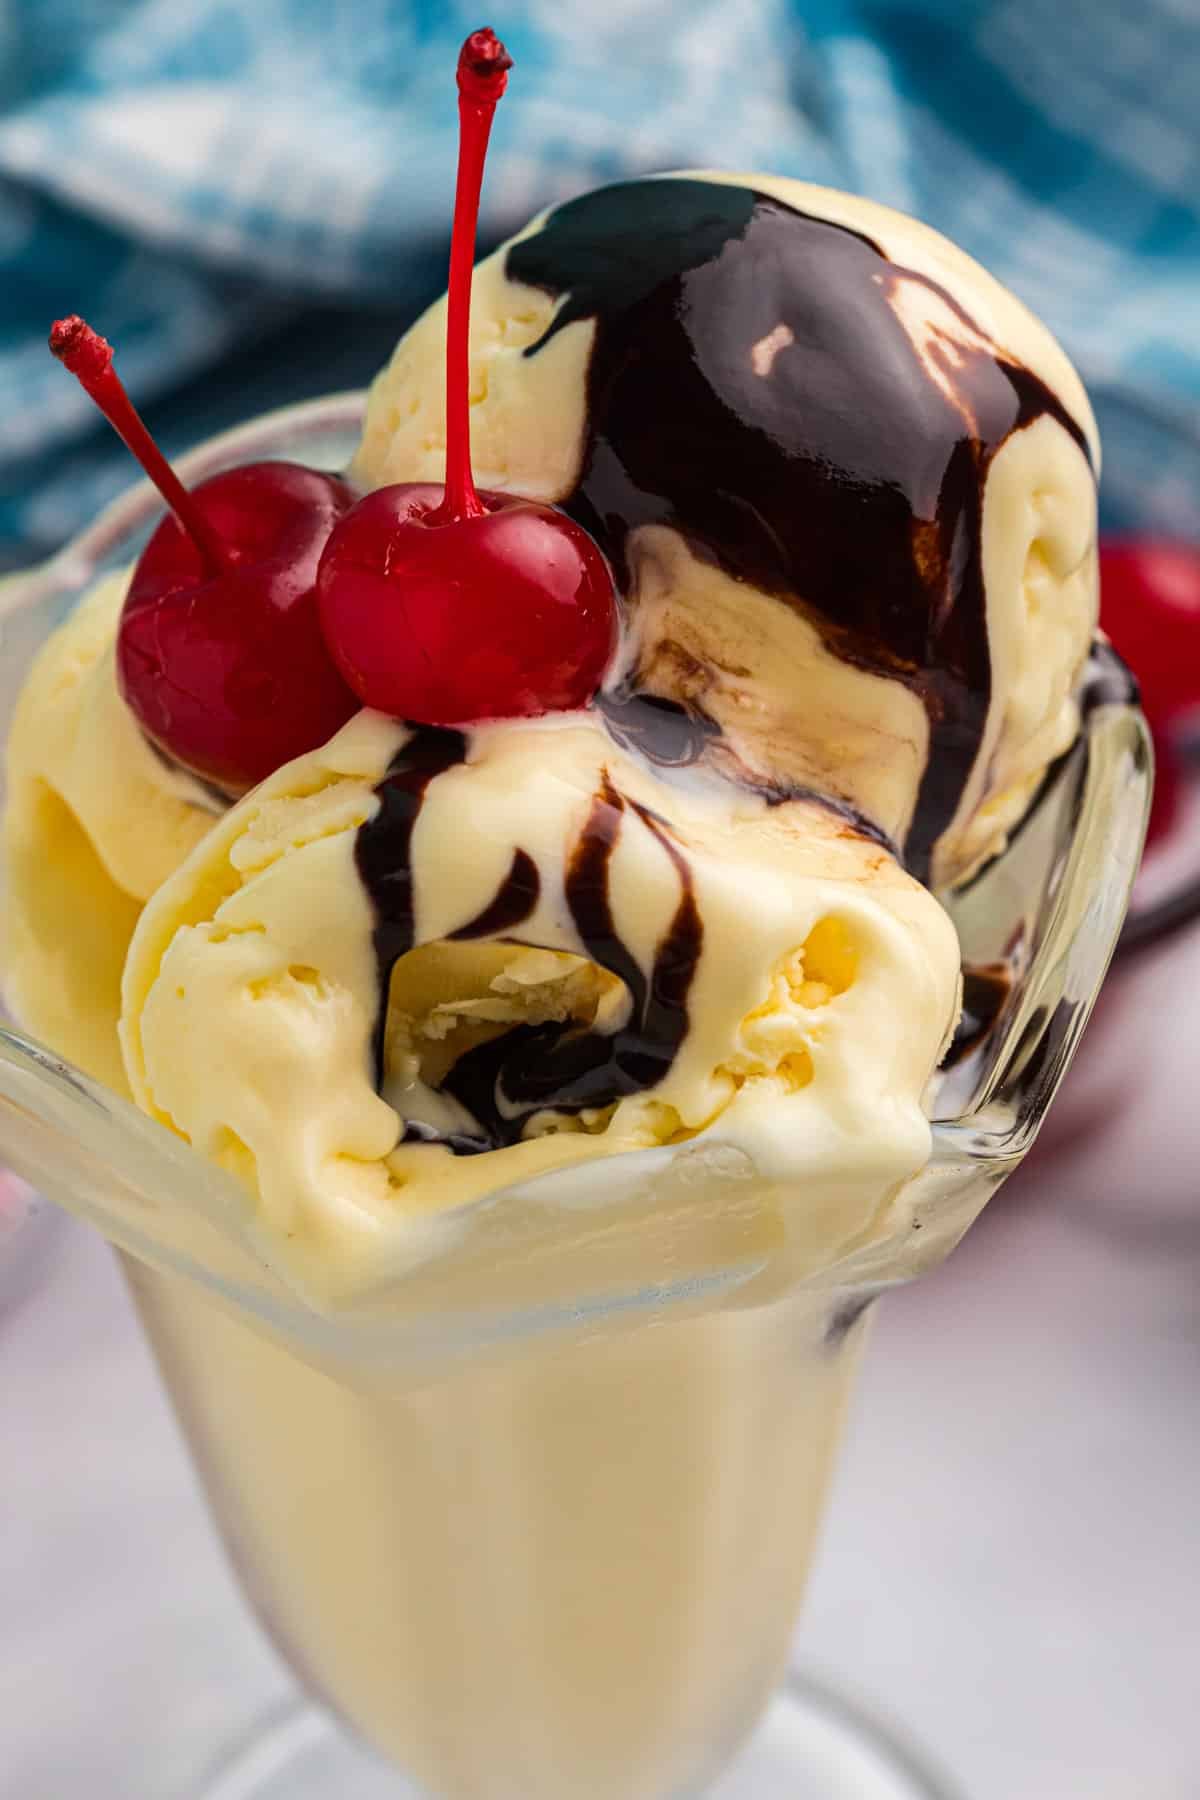 ice cream sundae with cherries and hot fudge